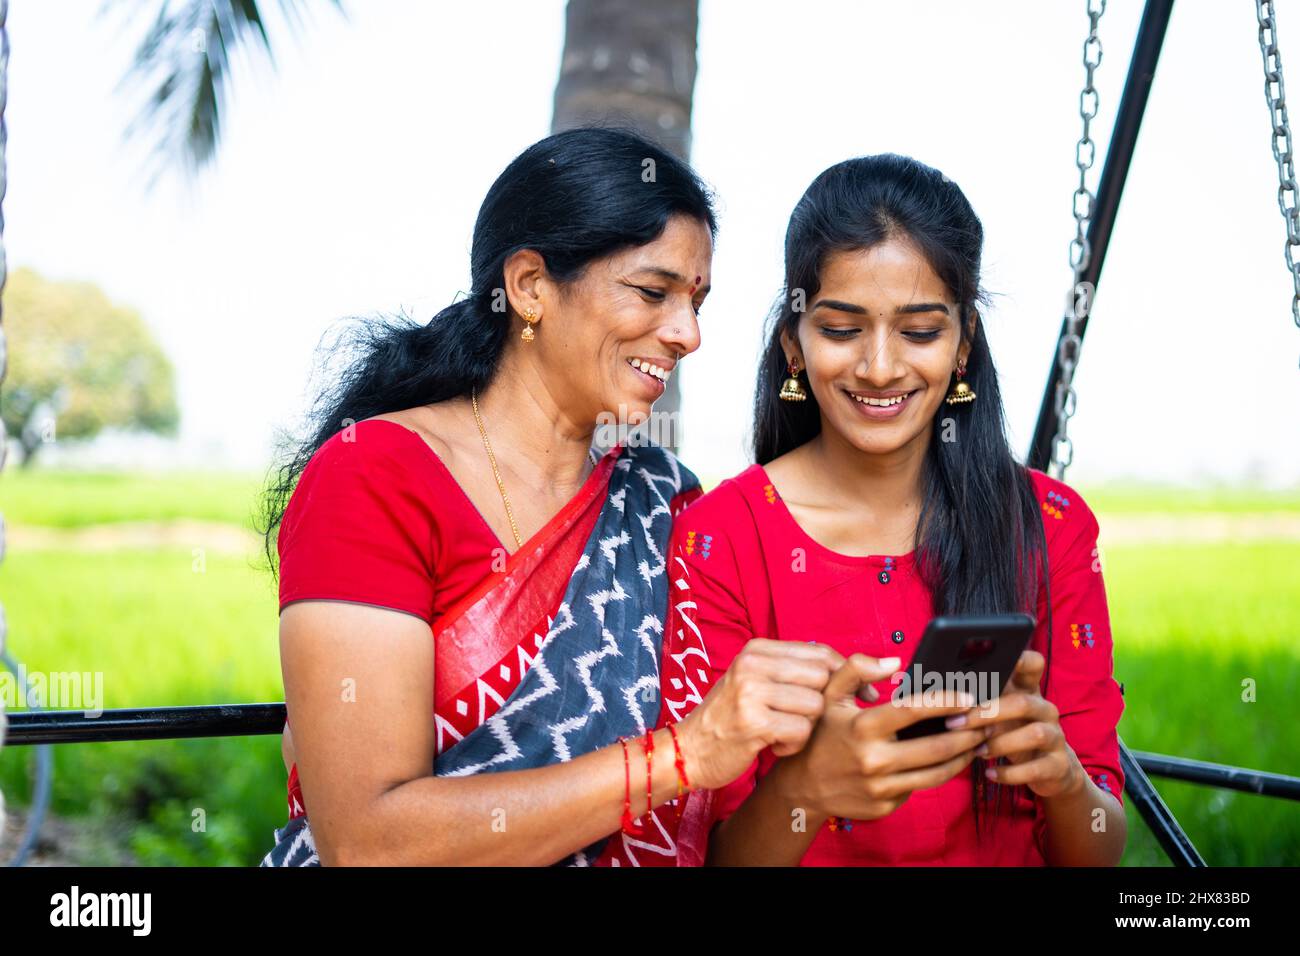 La mère et la fille détendues à l'oscillation à l'aide du téléphone mobile - concept de bonheur, de liaison, d'utilisation des médias sociaux et de la famille indienne Banque D'Images